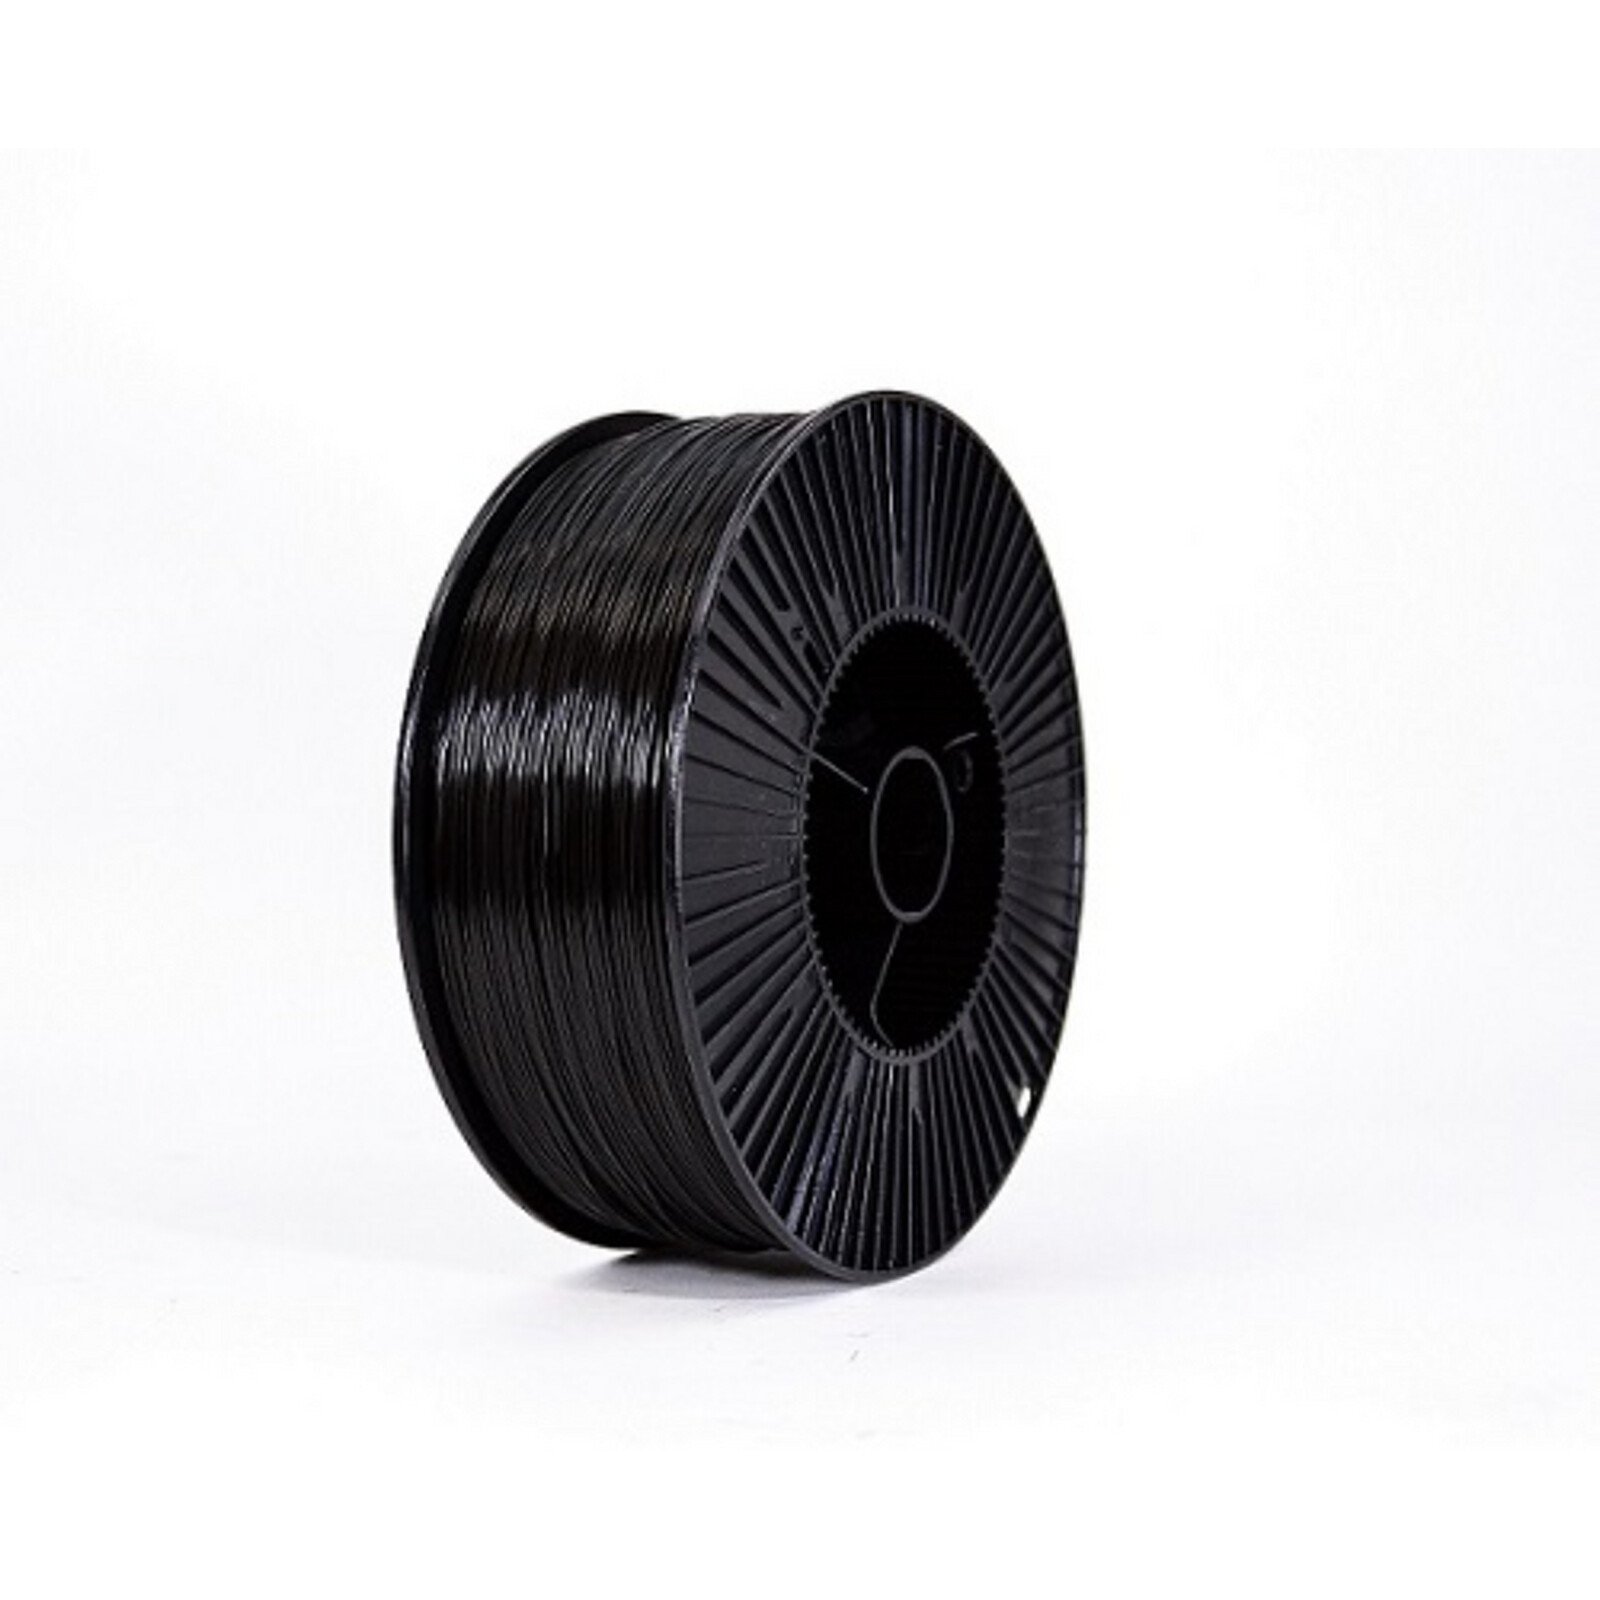 Spectrum Premium PLA noir (deep black) 1,75 mm 2kg - Filament 3D